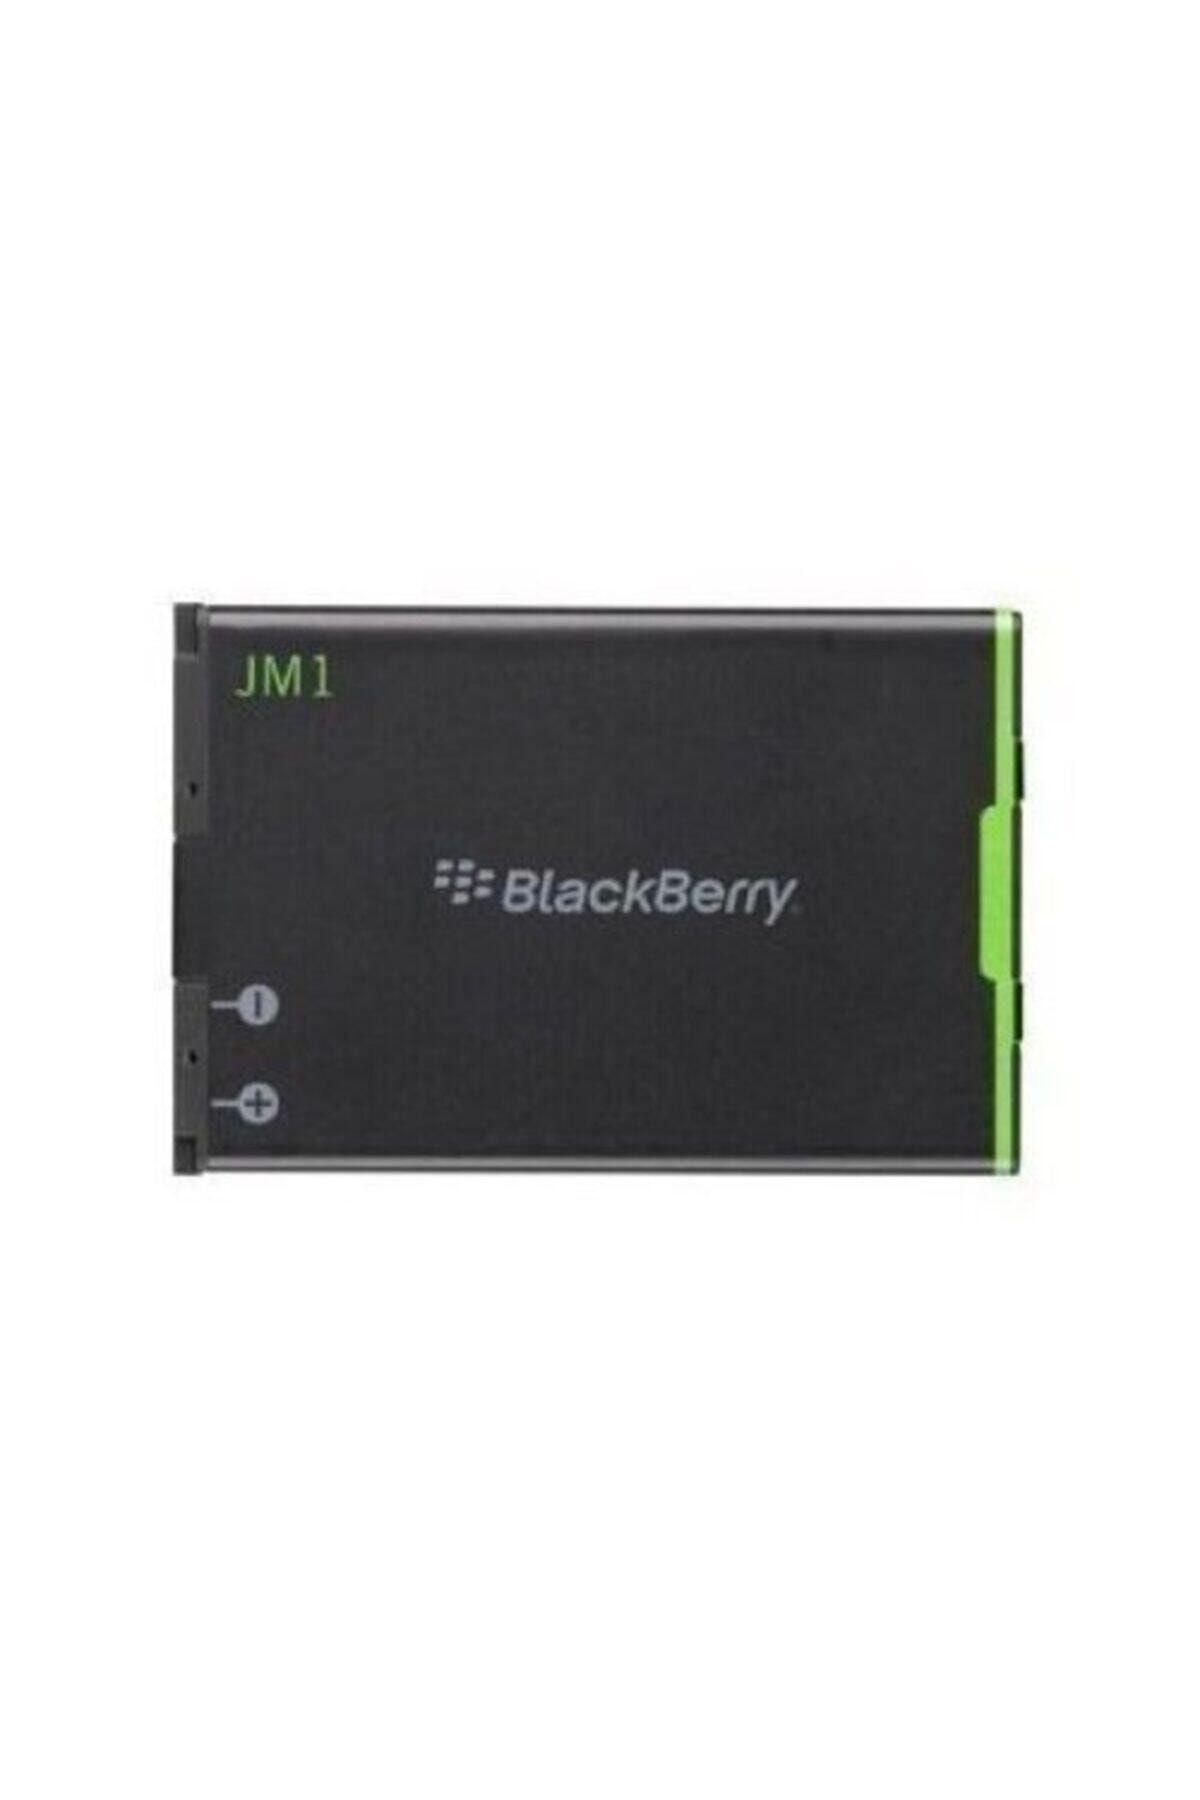 BlackBerry 9900 9930 9790 Modellerıne Uyumlu ( Jm-1 , Jm1 ) Batarya Pil